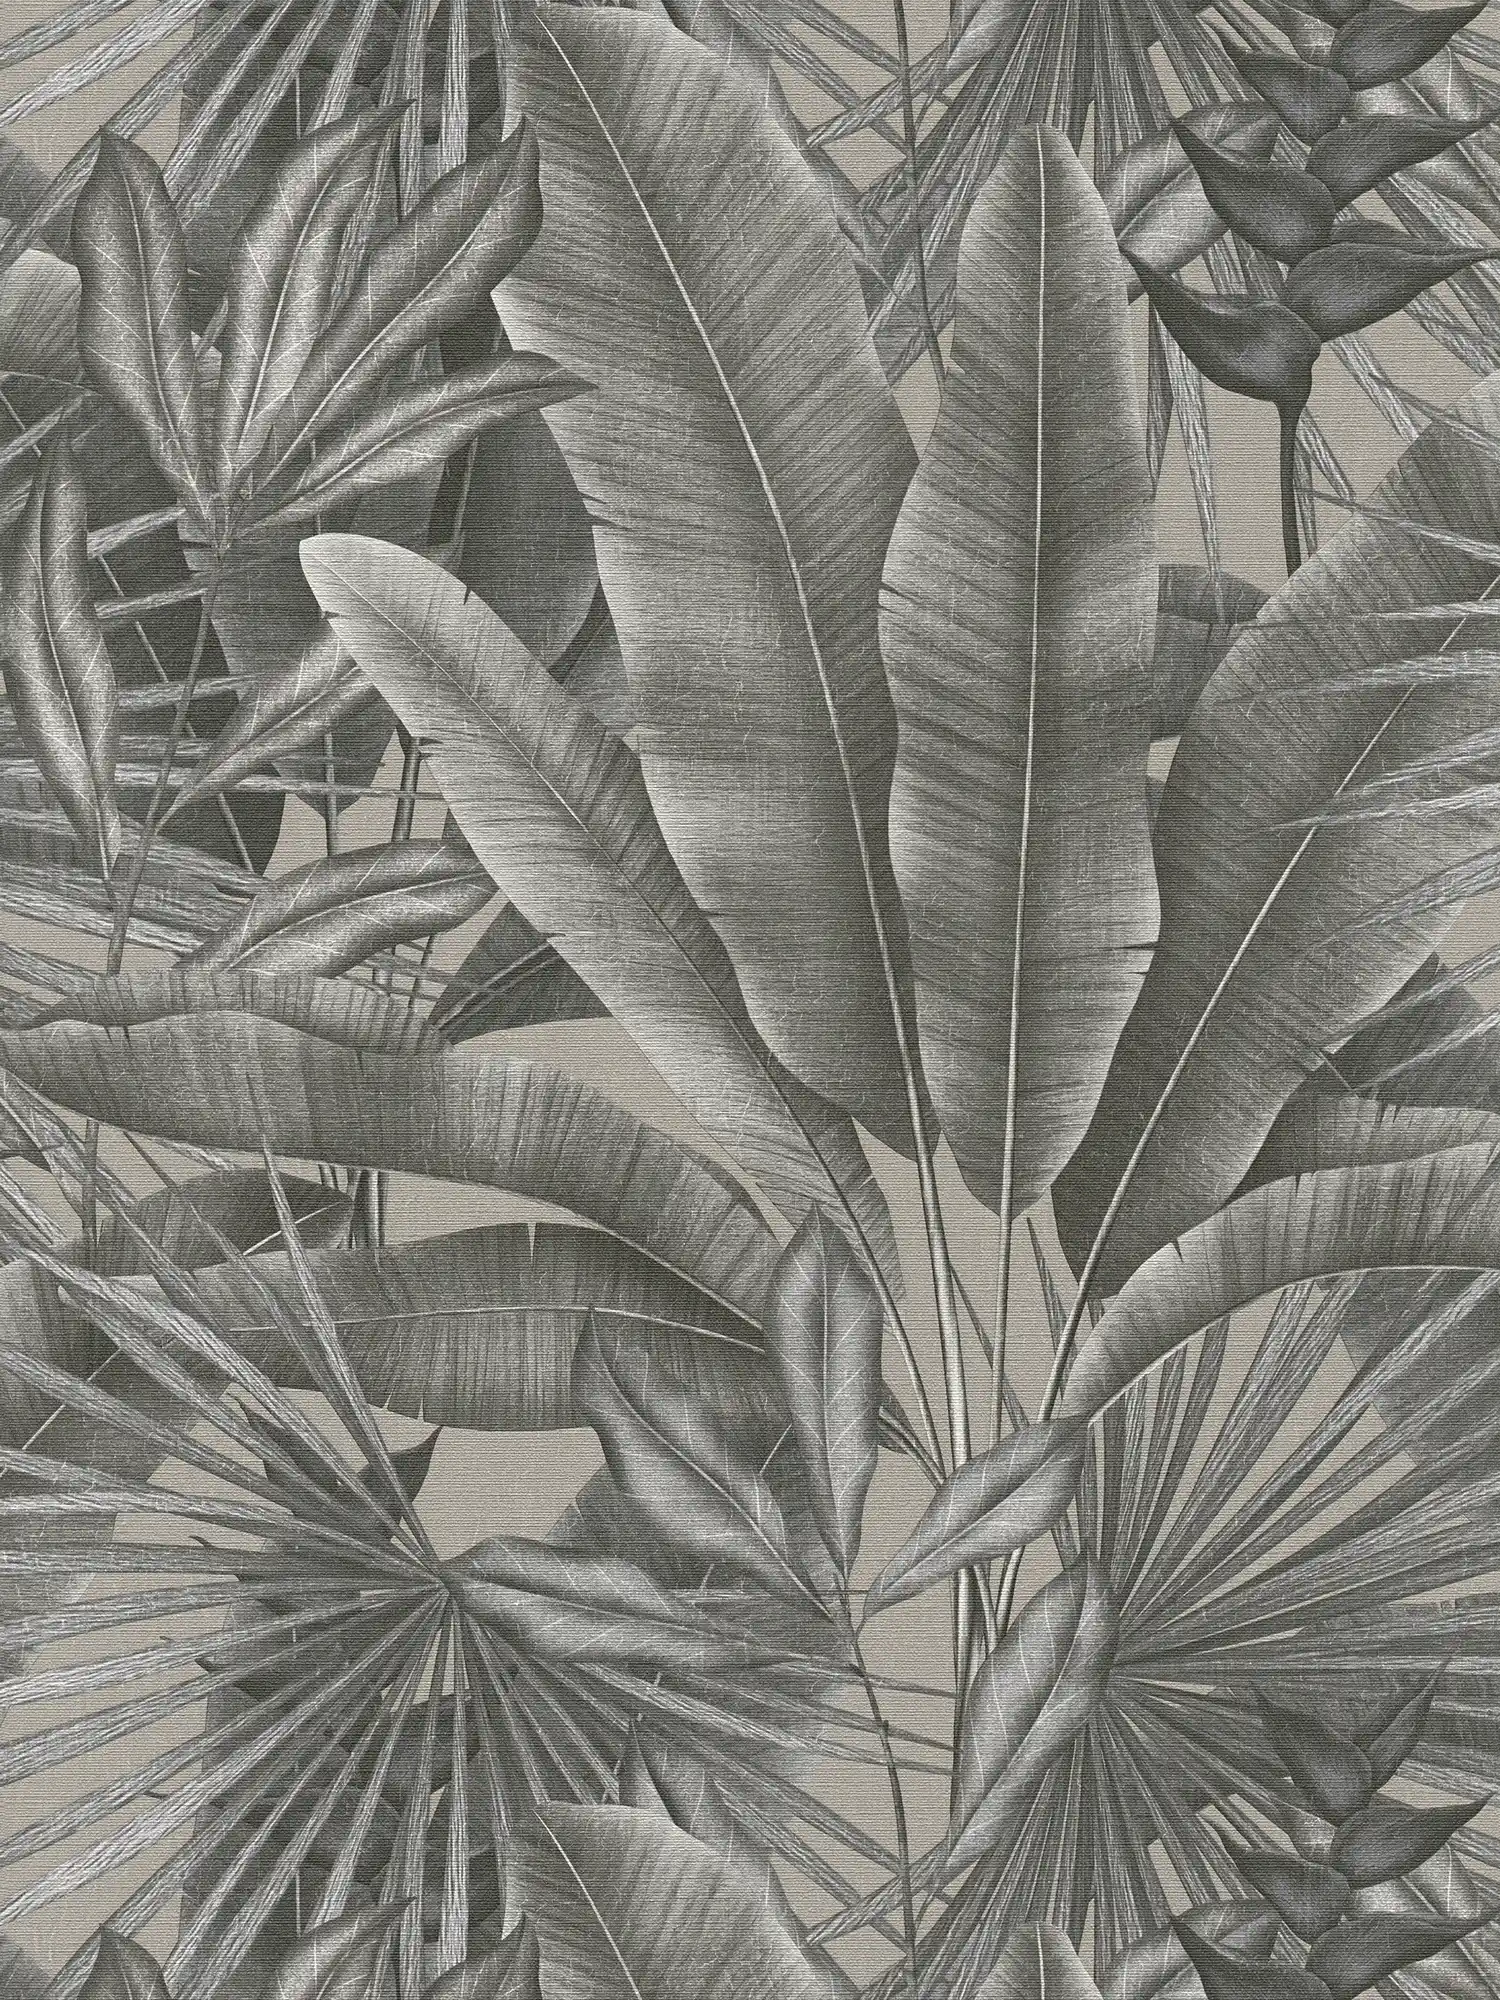 Vliesbehang met bladmotief in jungledessin - grijs, beige, zwart
